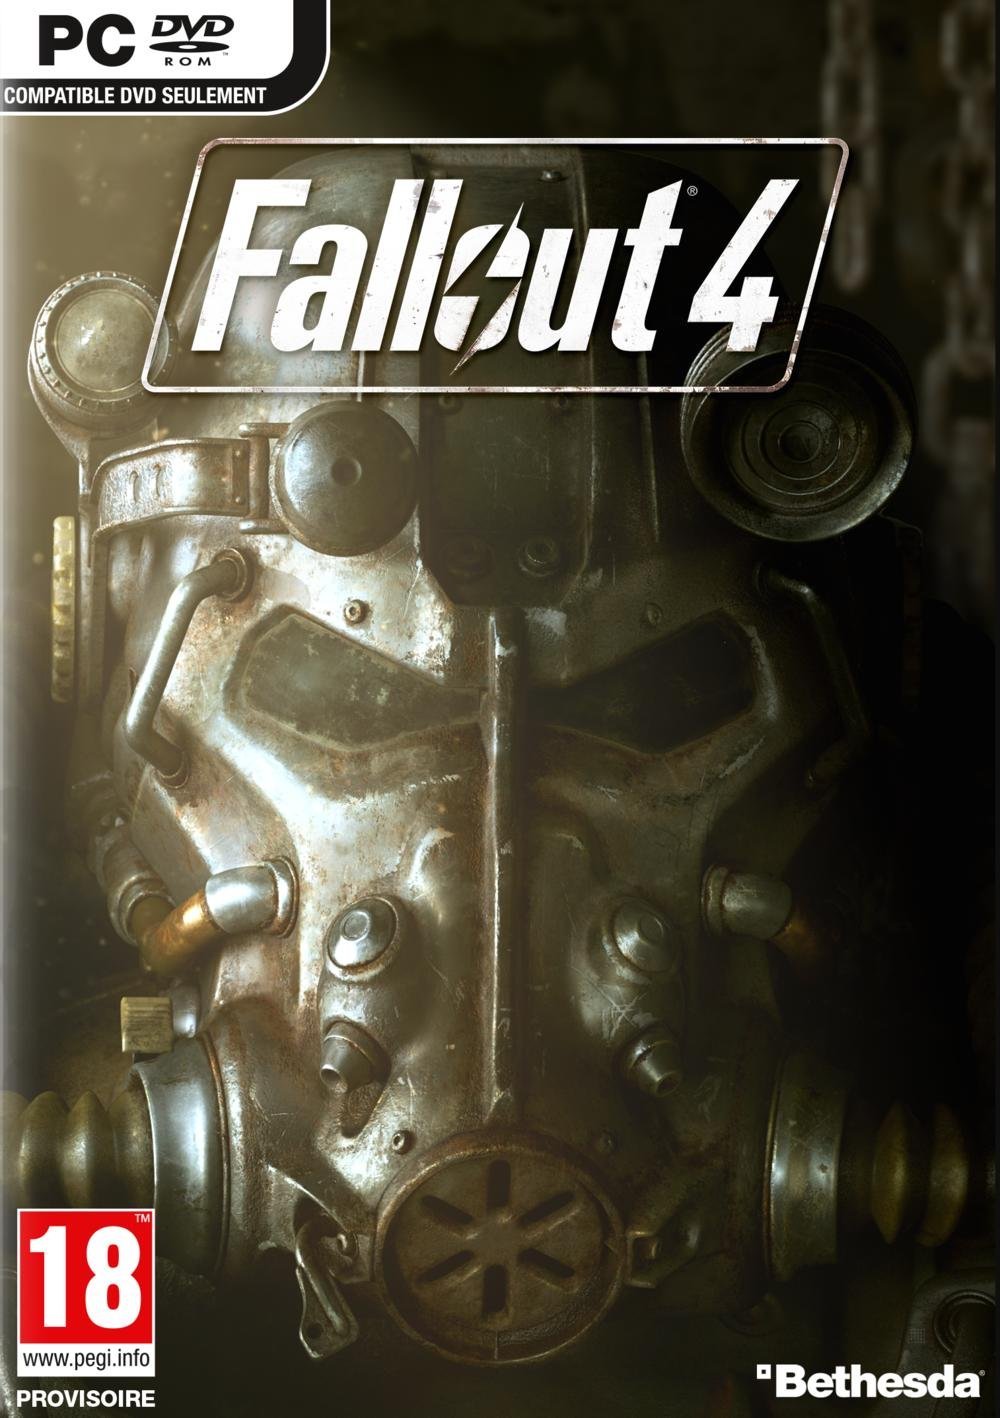 Bote de Fallout 4